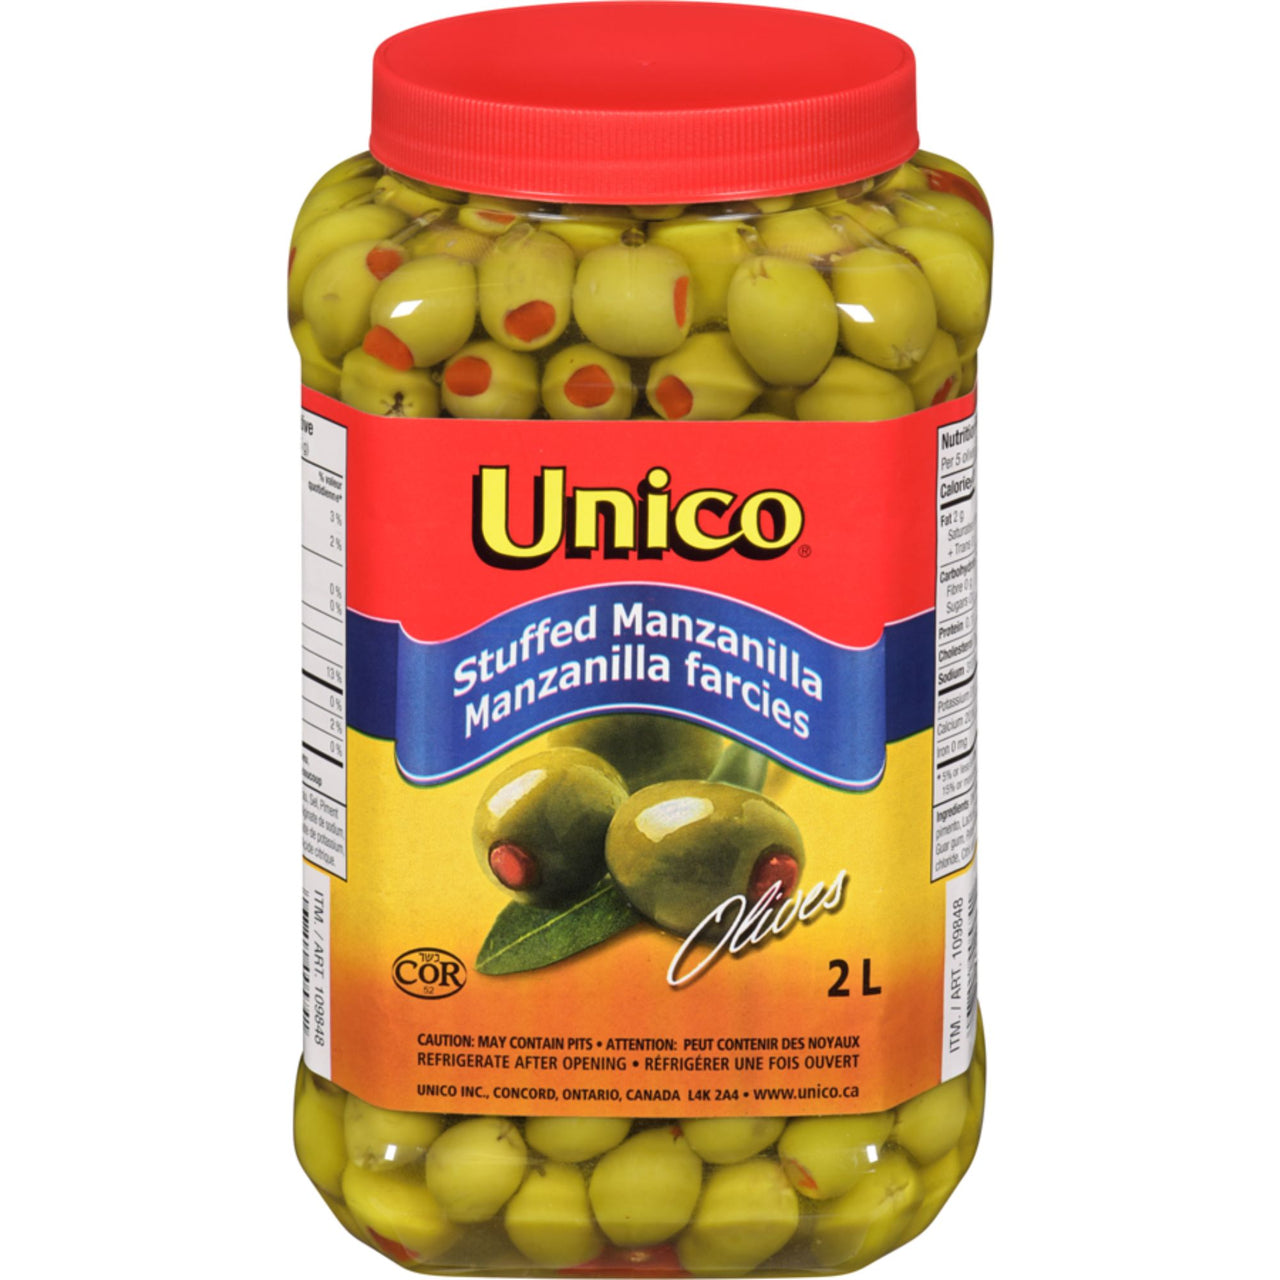 Image of Unico stuffed manzanilla Olives